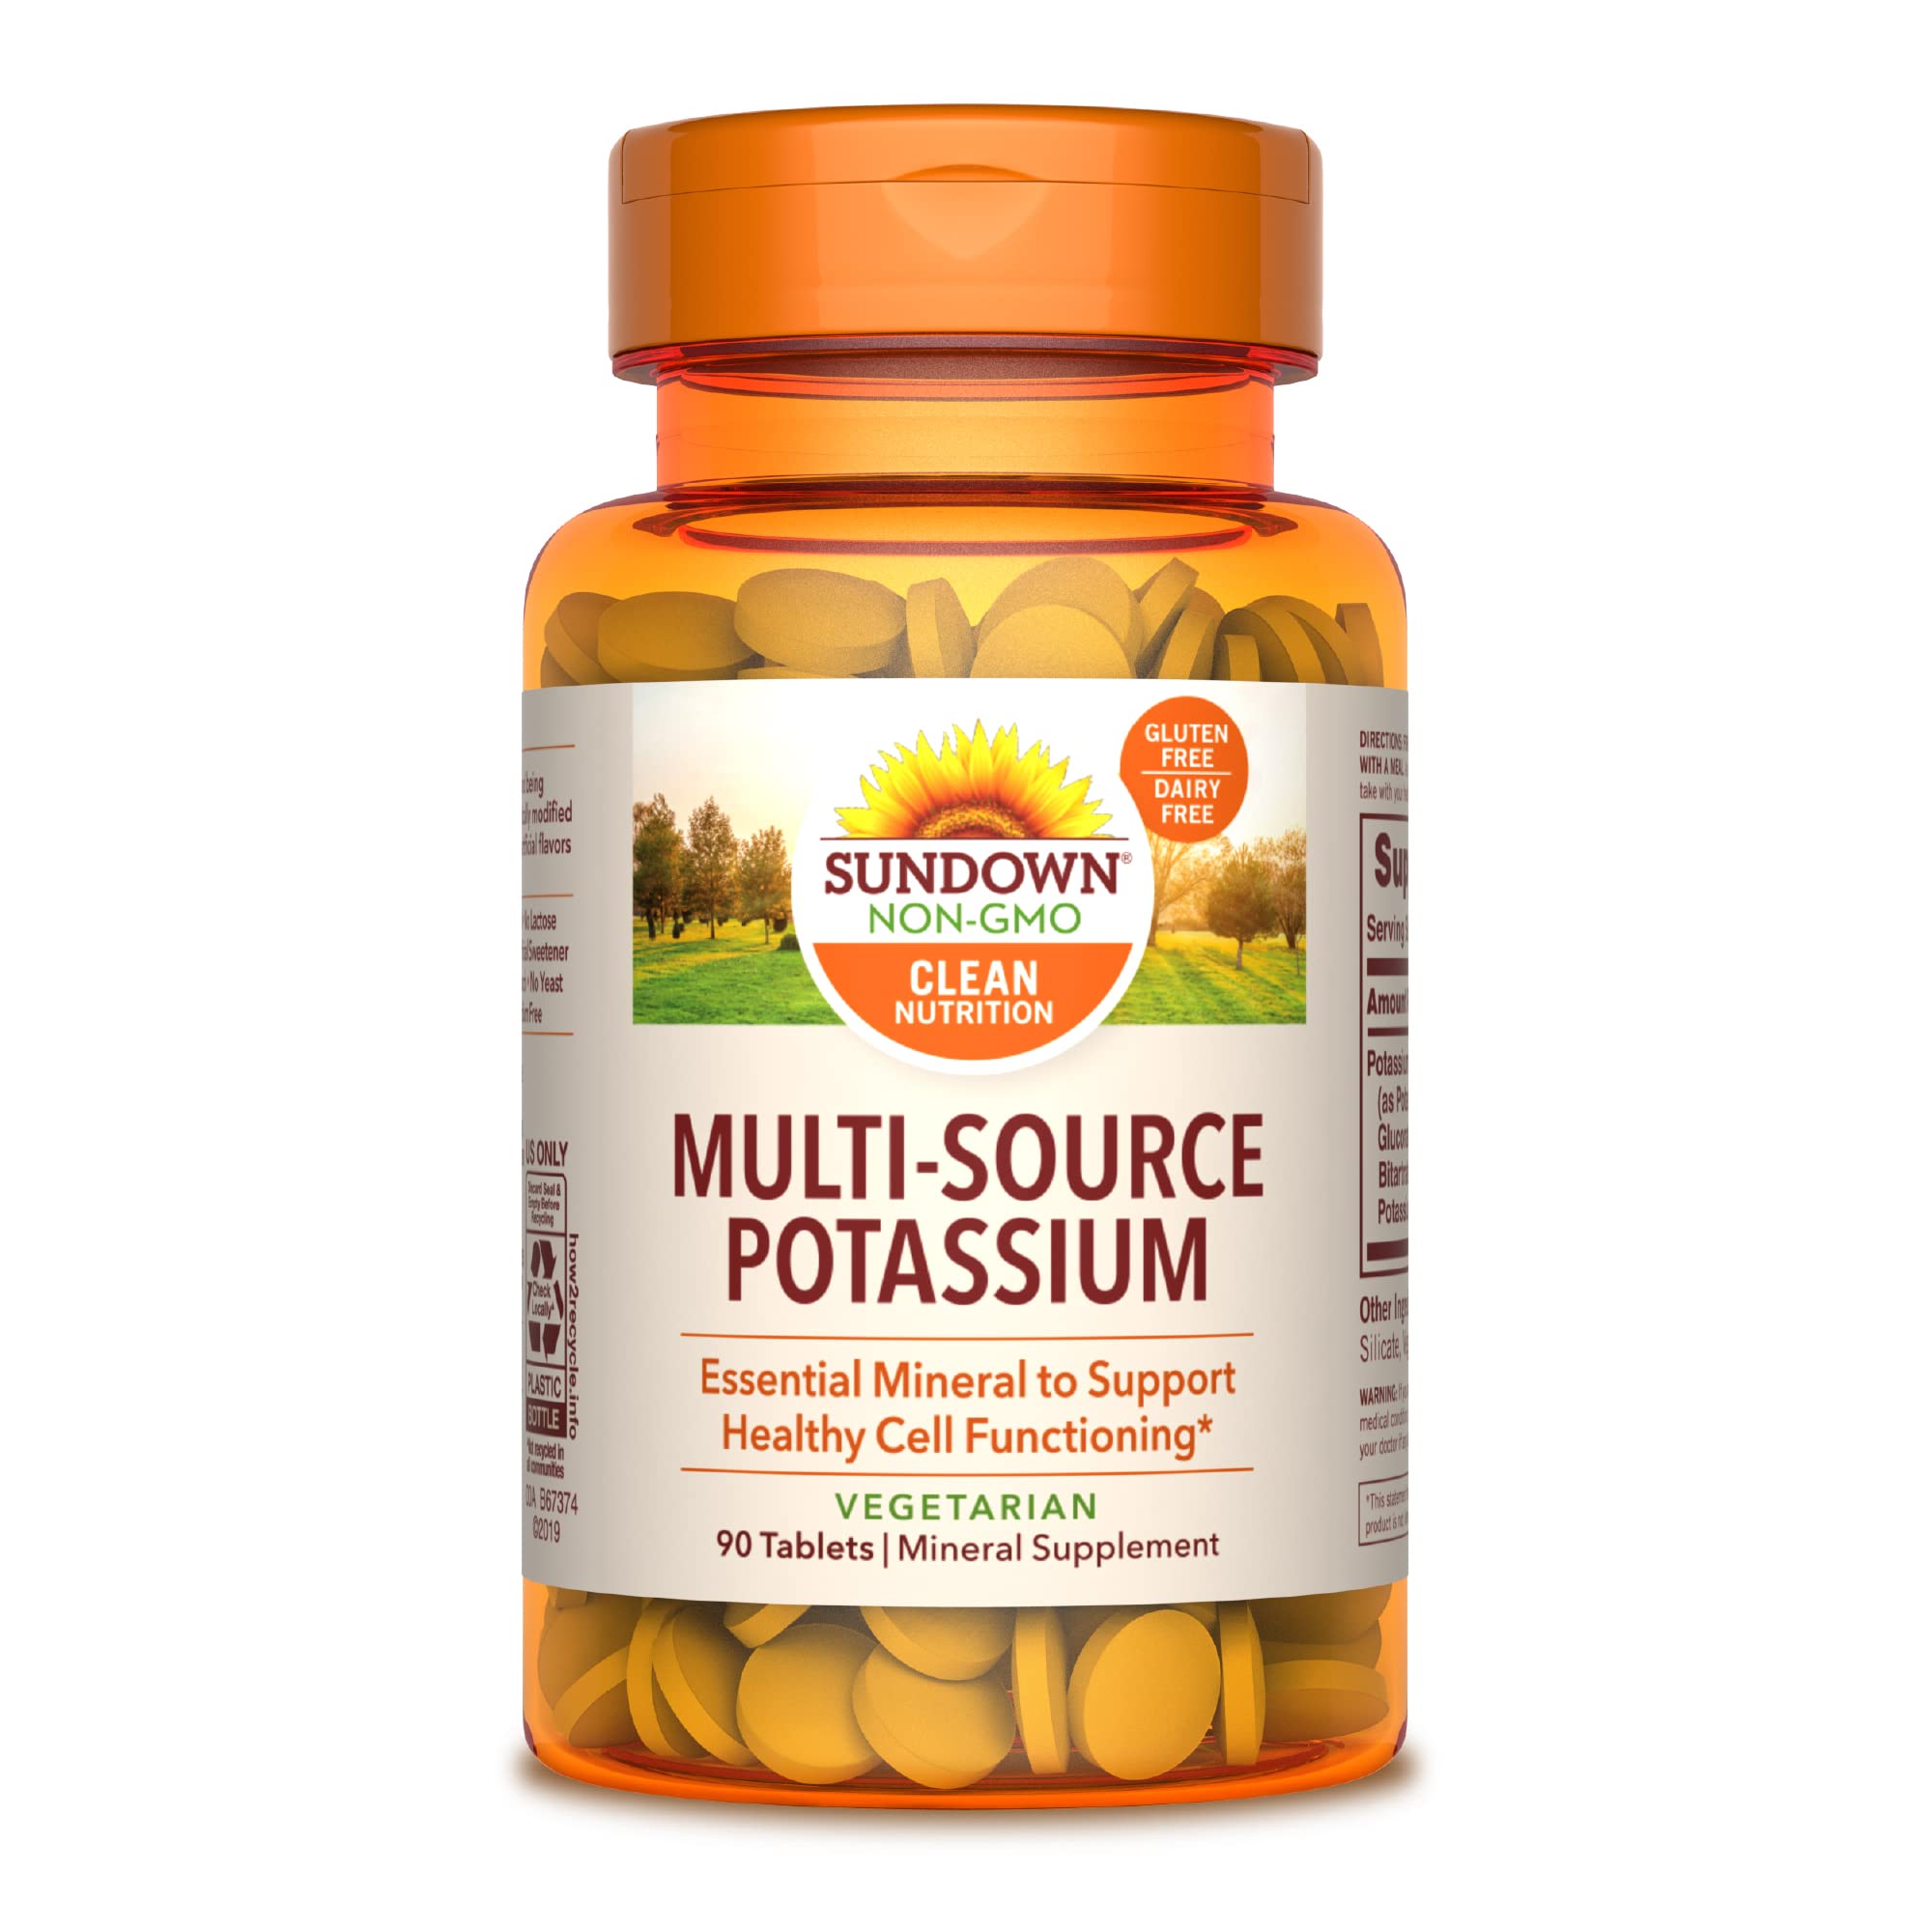 Sundown Multi-Source Potassium, 90 Count (Pack of 1)